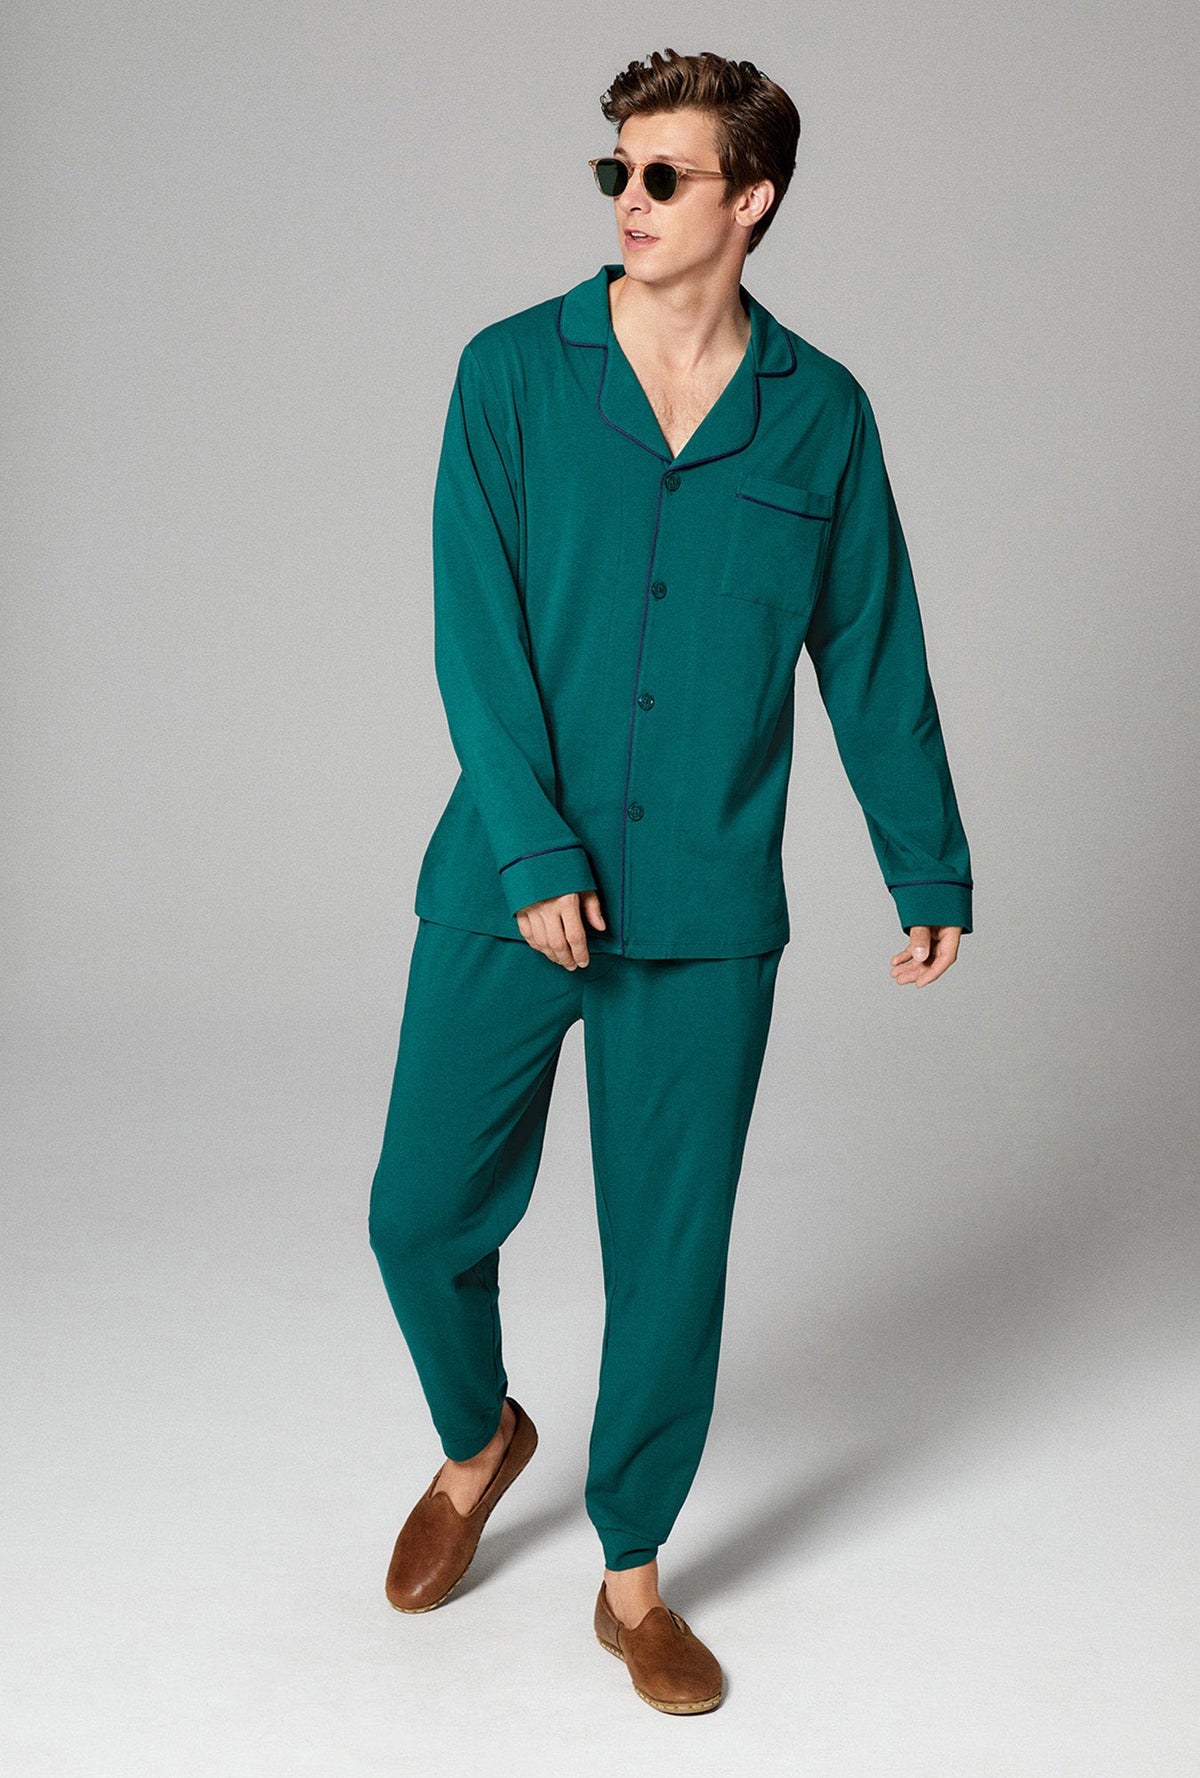 Emerald Pajamas -  Canada